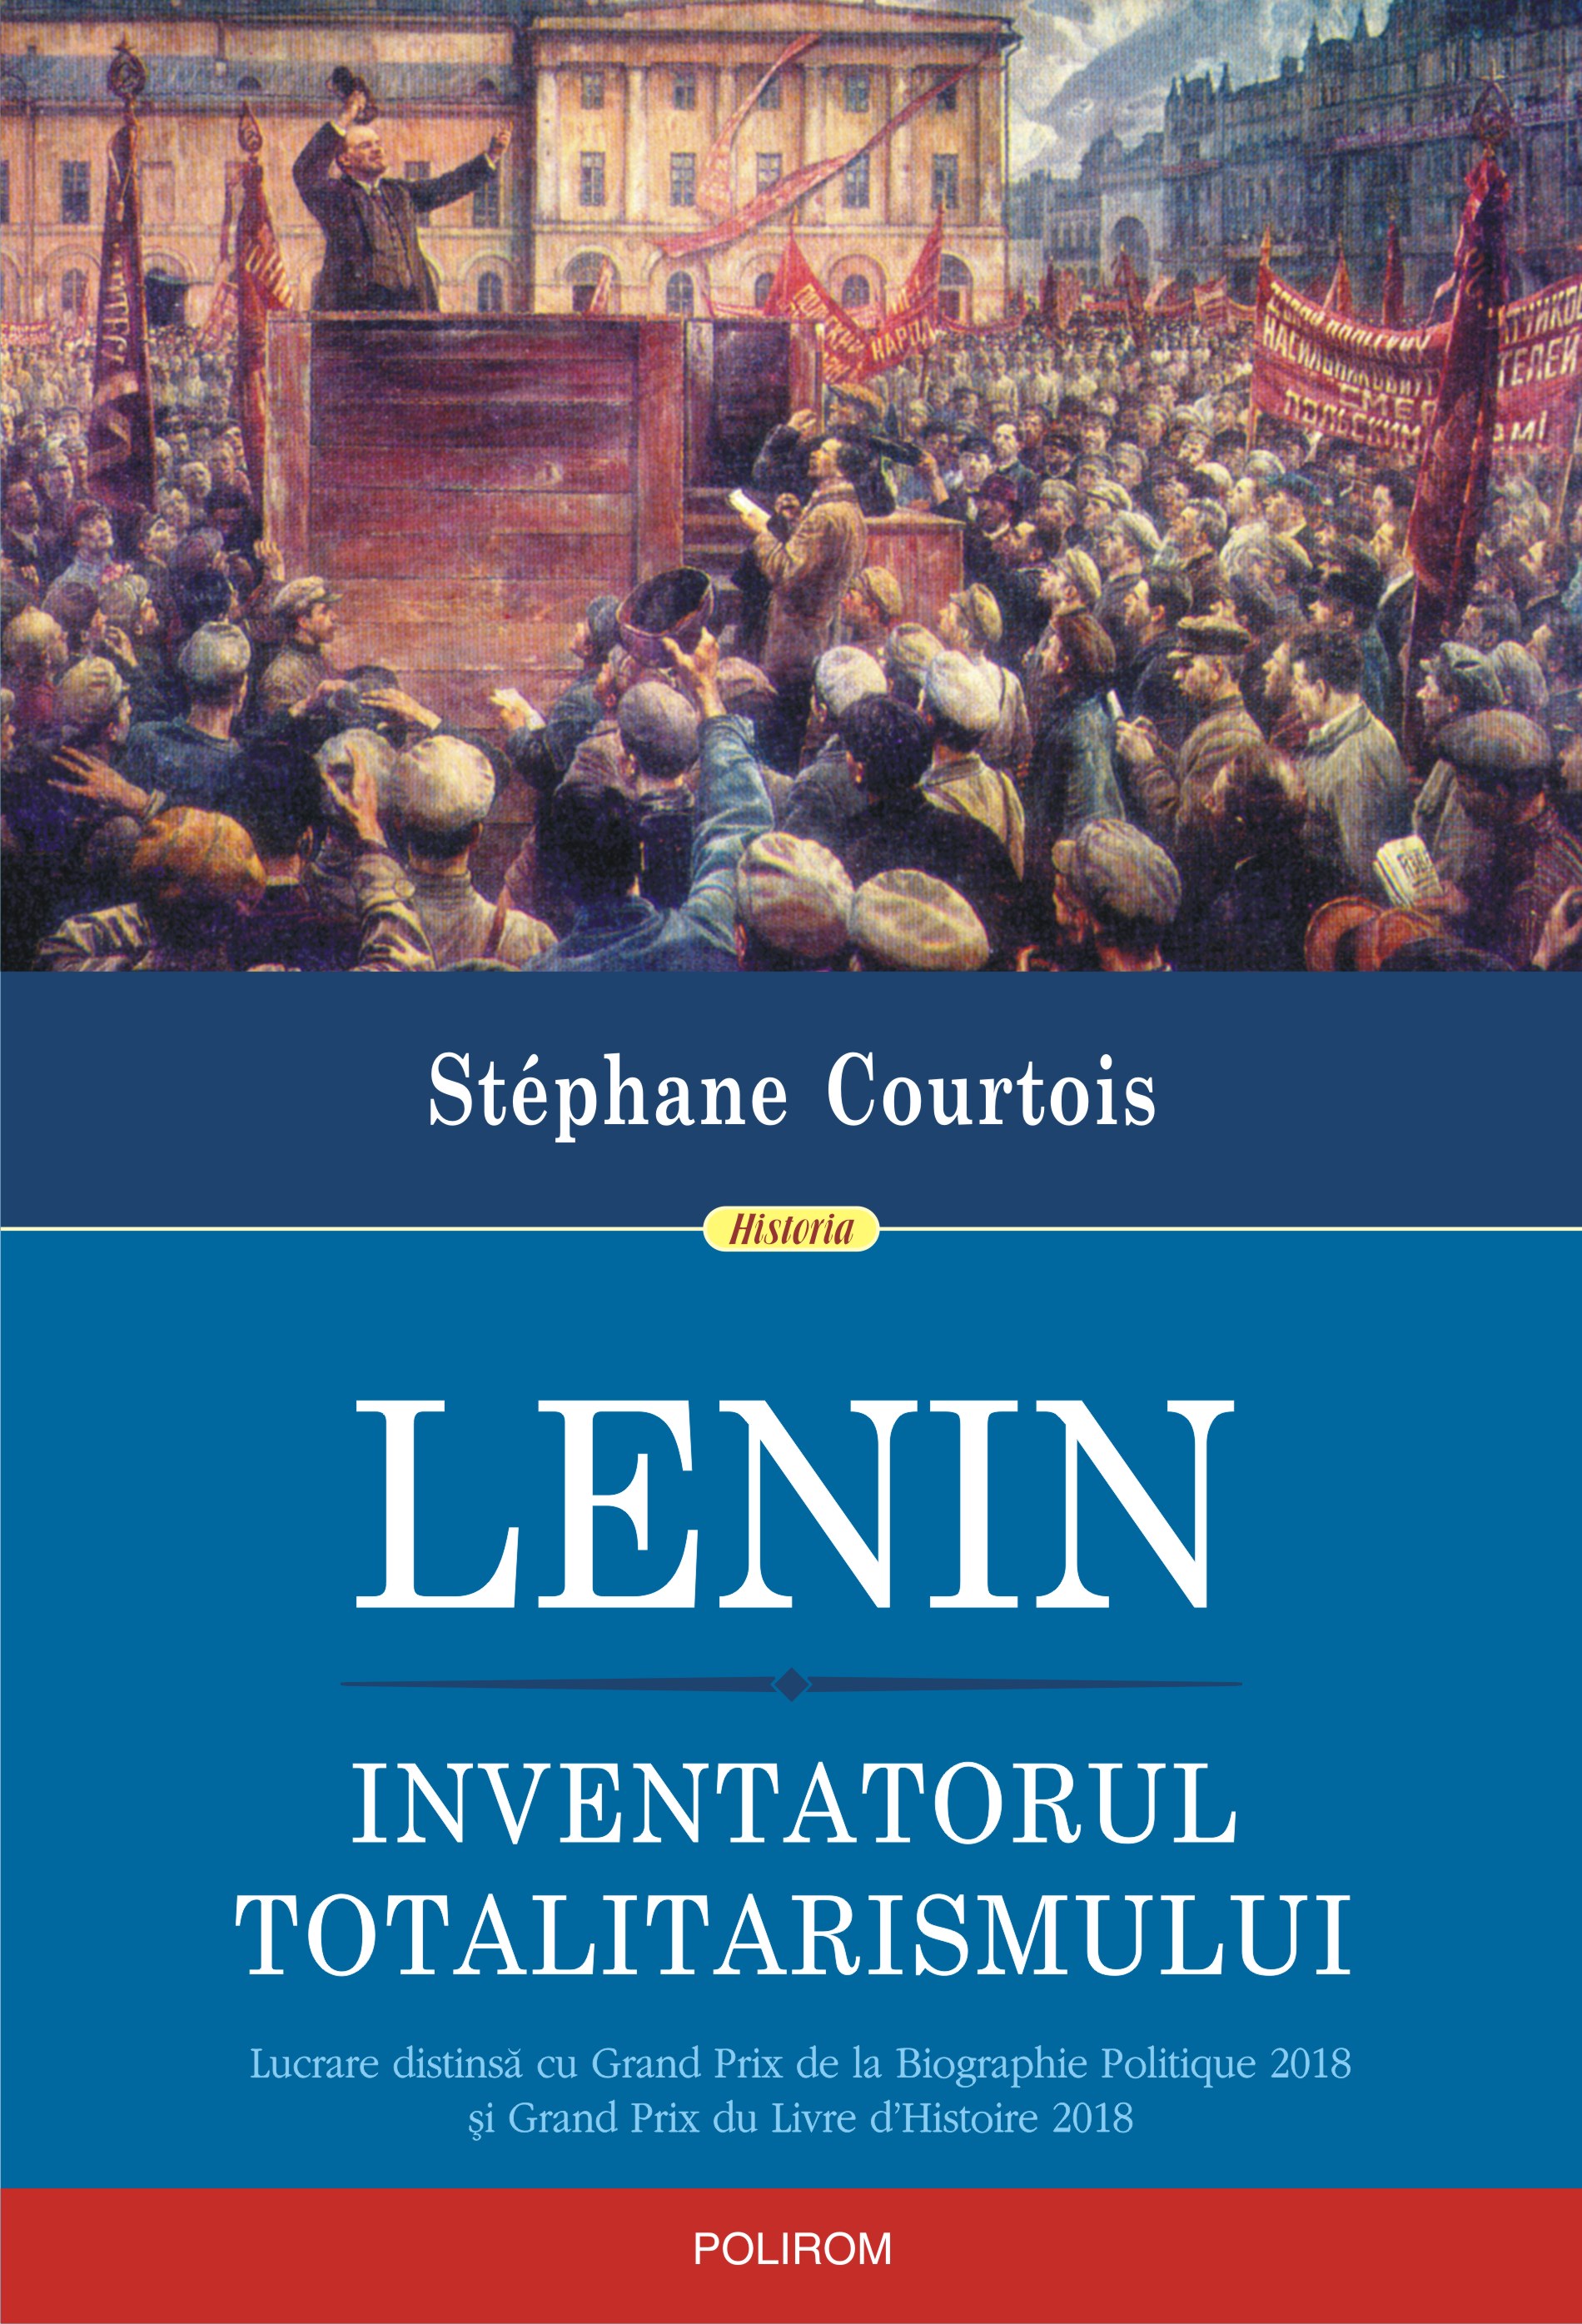 eBook Lenin. Inventatorul totalitarismului - Stephane Courtois